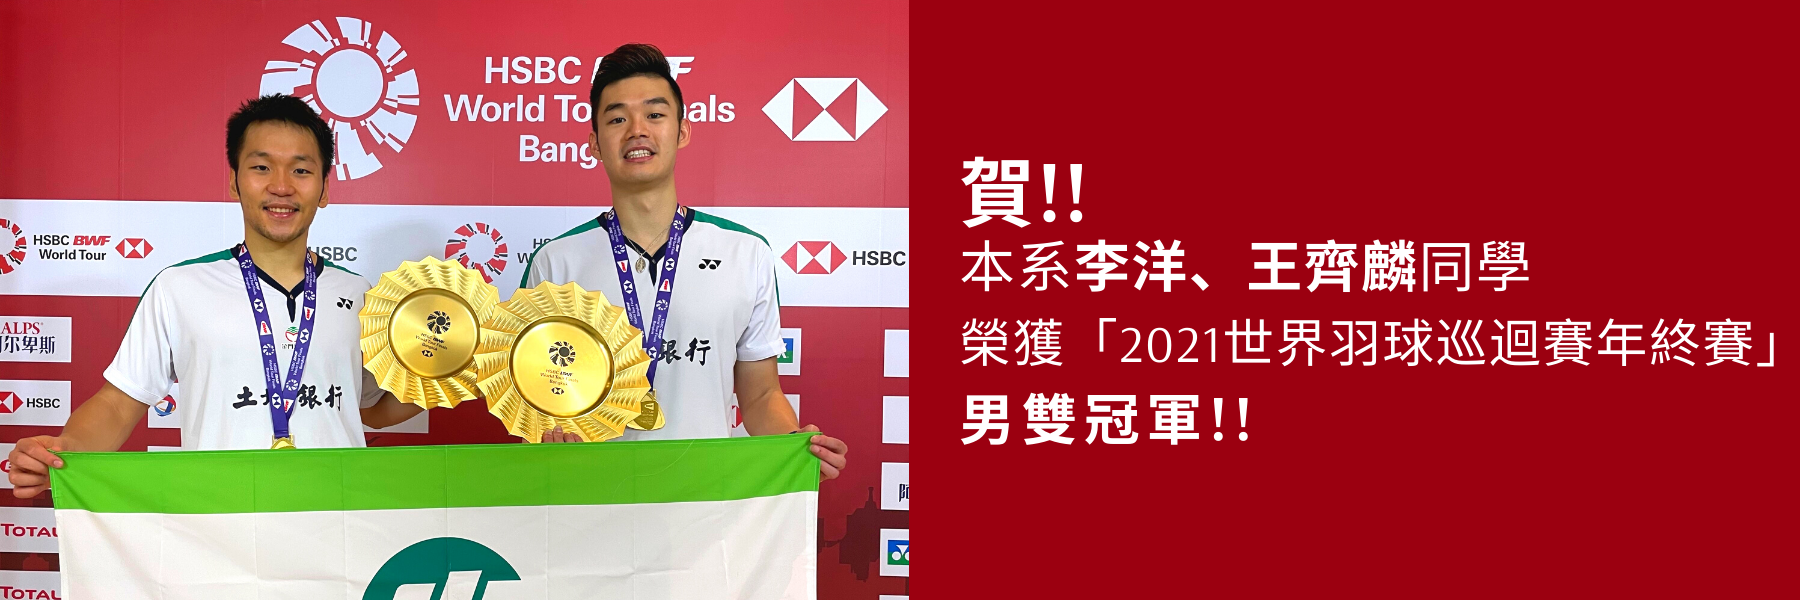 本系李洋、王齊麟同學榮獲2021世界羽球巡迴賽年終賽 男雙冠軍